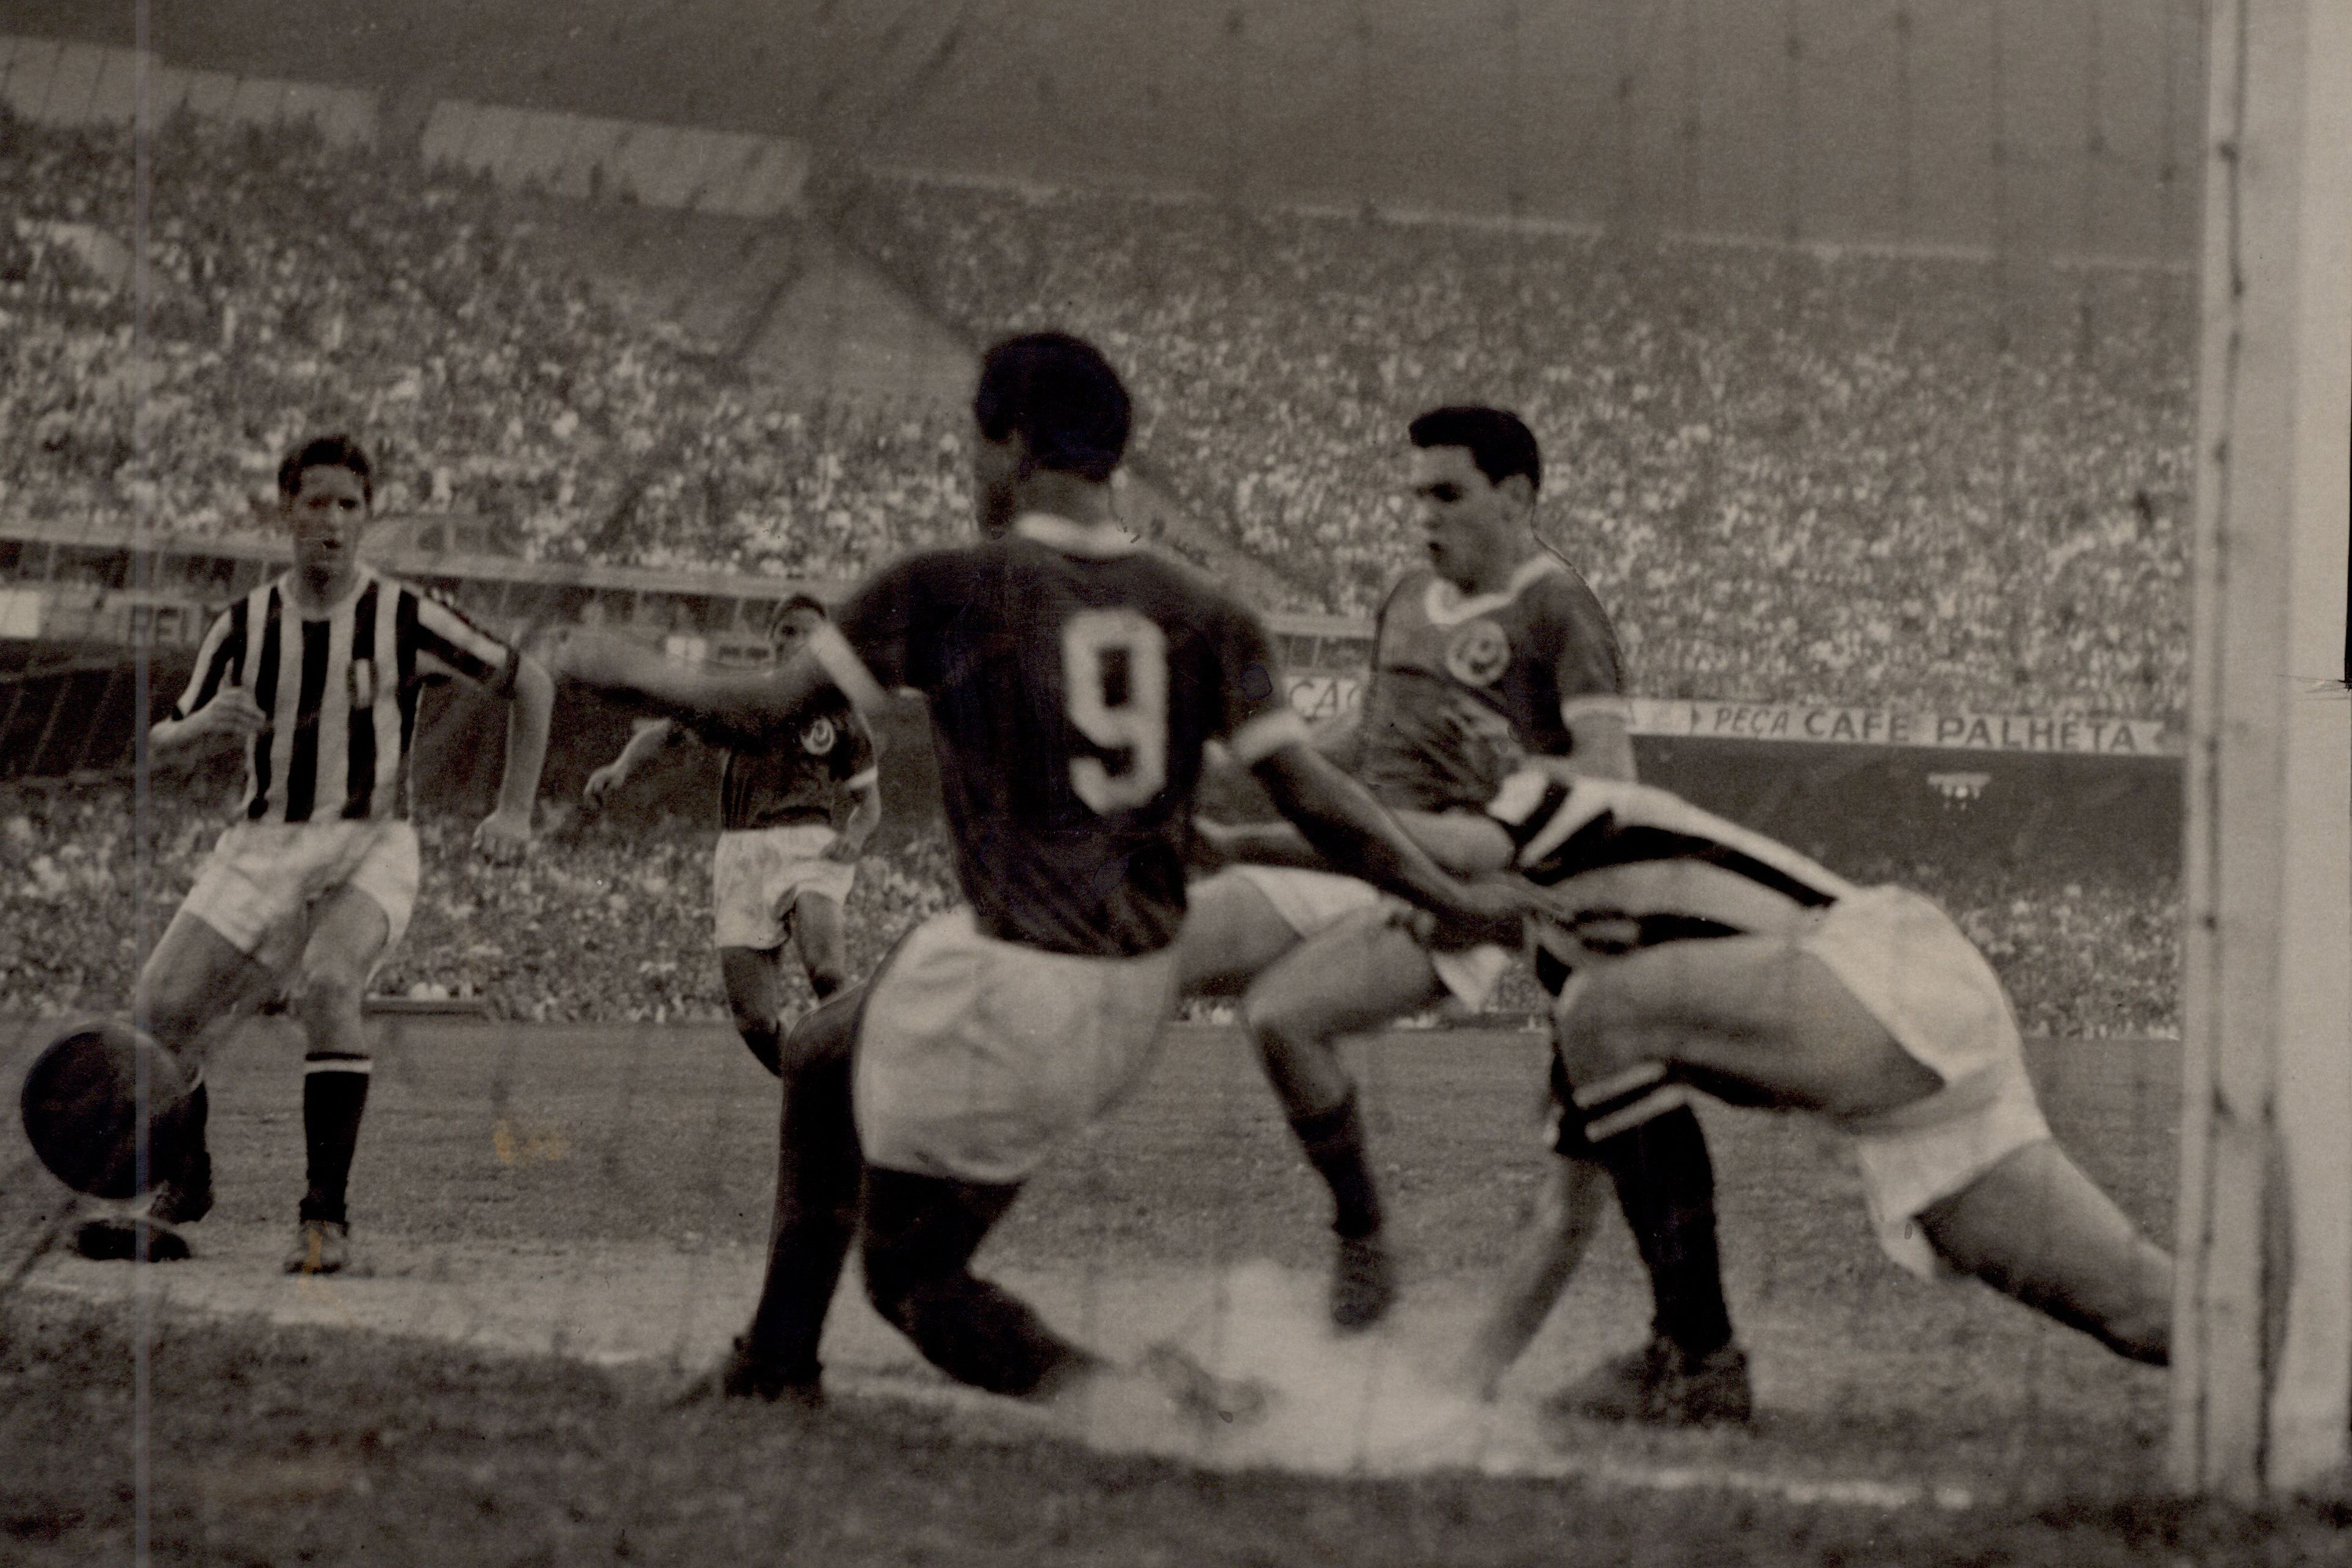 Fifa diz novamente que Copa Rio de 1951, conquistada pelo